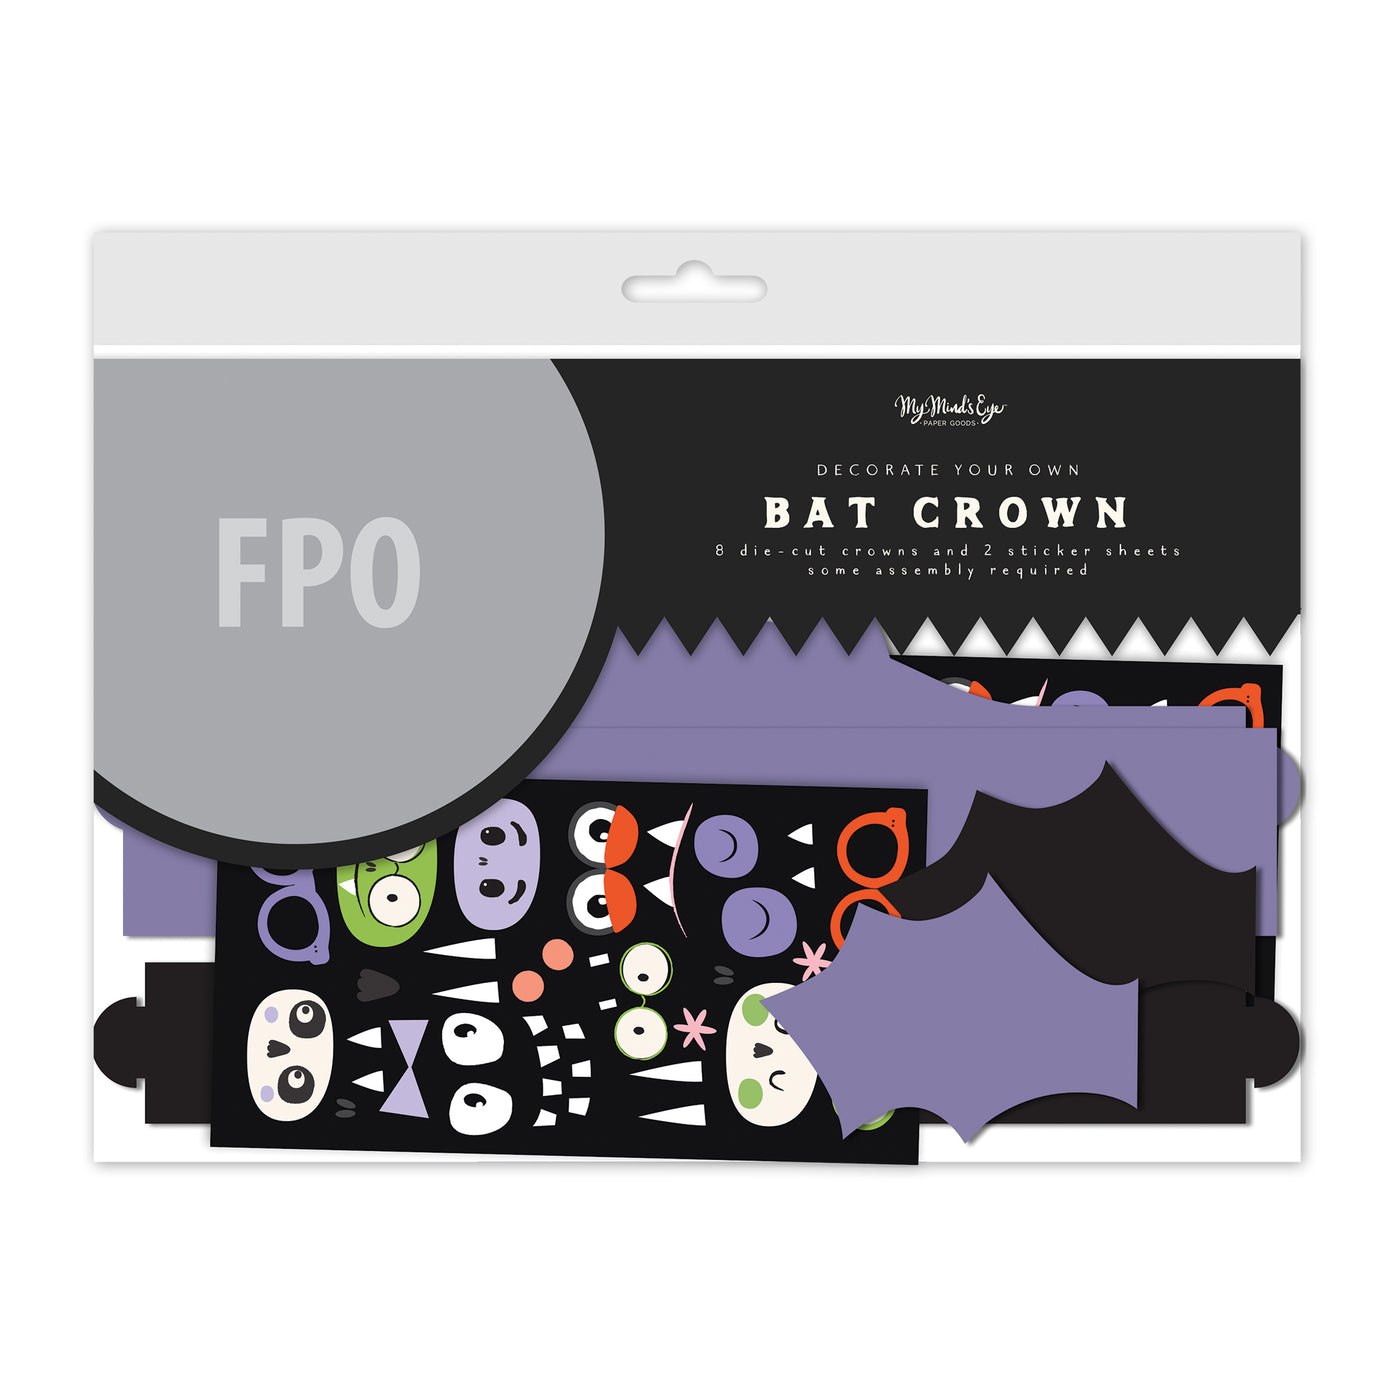 PLKC03 -  Bat Crowns DIY Project Kit